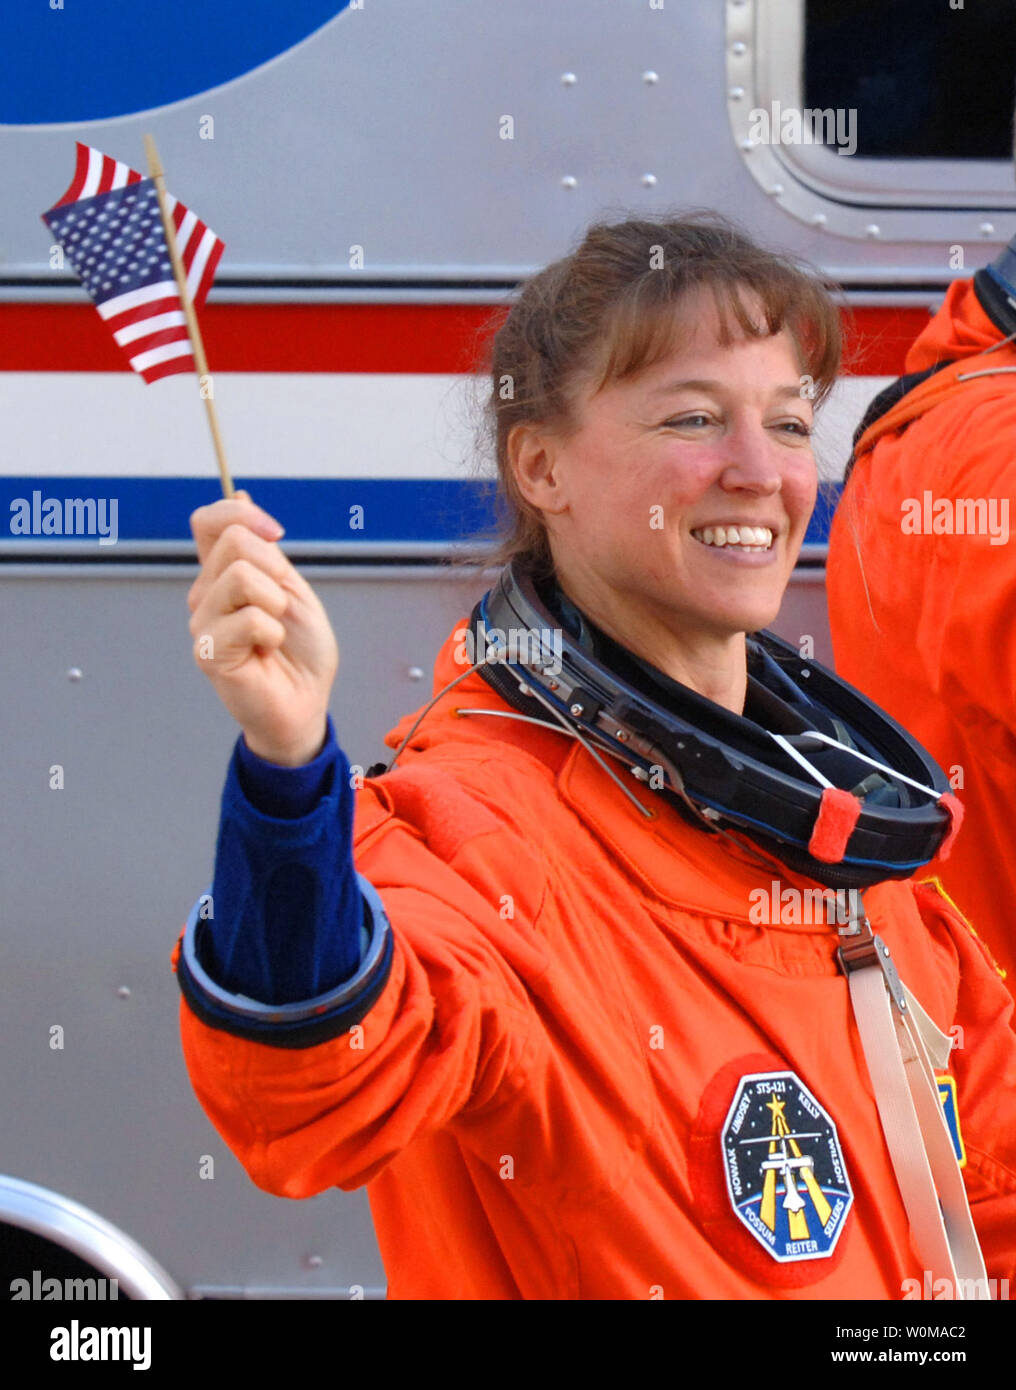 Astronauta Lisa Nowak è stato caricato con il tentato omicidio di primo grado e il 6 febbraio 2007. La polizia dice che Nowak ha spinto 900 miglia e indossato un travestimento prima di fronte a una donna che ha creduto era un concorrente per le affezioni del Navy Cmdr. William Oefelein, un celibe compagno astronauta. Nowak è mostrato sventola una bandiera americana come ha camminato fuori delle operazioni e Checkout edificio a bordo della NASA Astrovan in rotta per la navetta spaziale Discovery per la missione STS-121 a Cape Canaveral, in Florida il 4 luglio 2006. (UPI foto/Pat Benic/File) Foto Stock